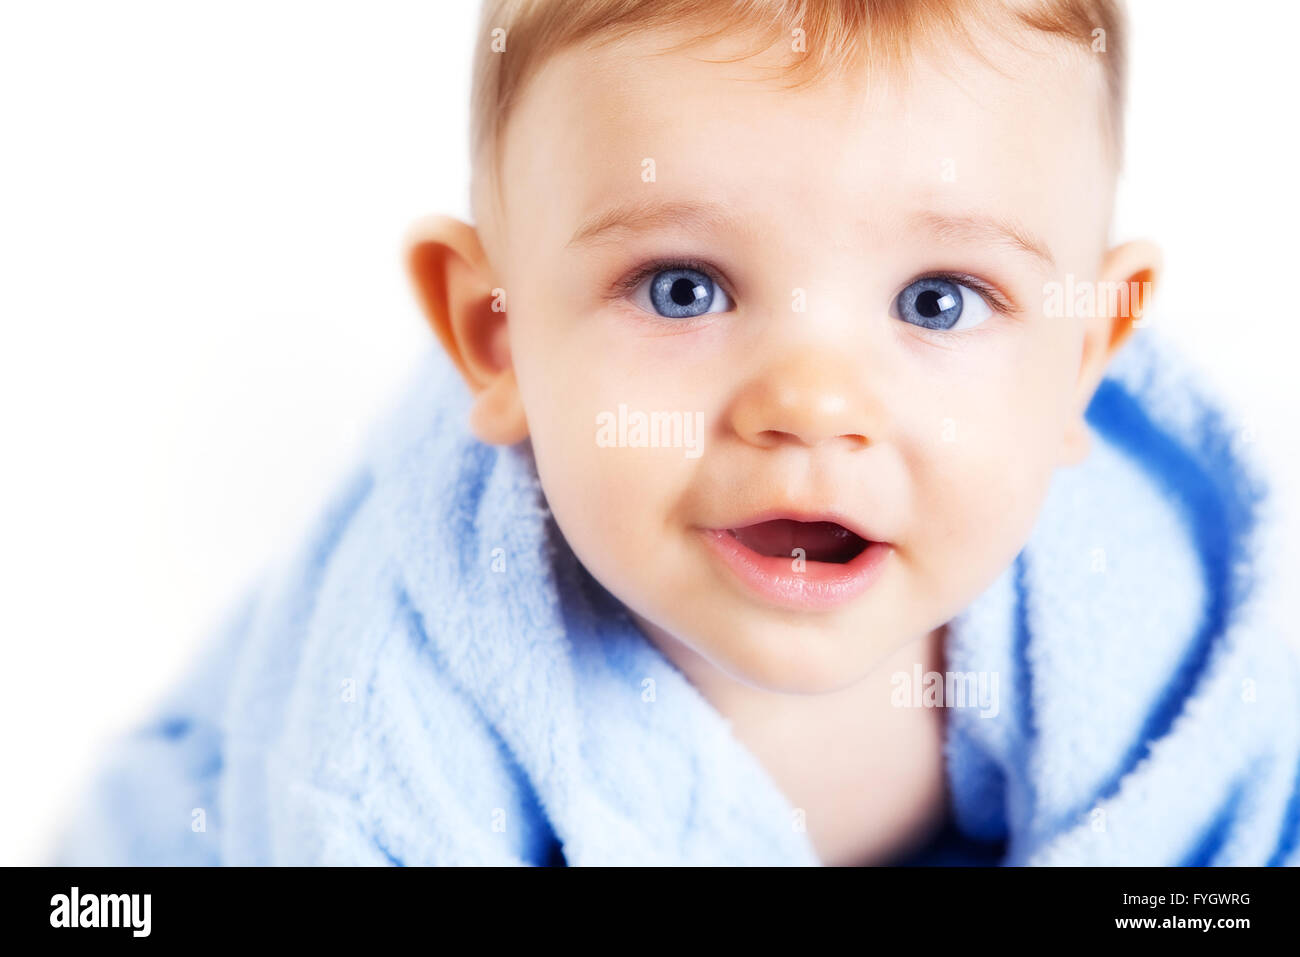 Visage de Bébé garçon aux yeux bleus sur fond blanc Banque D'Images